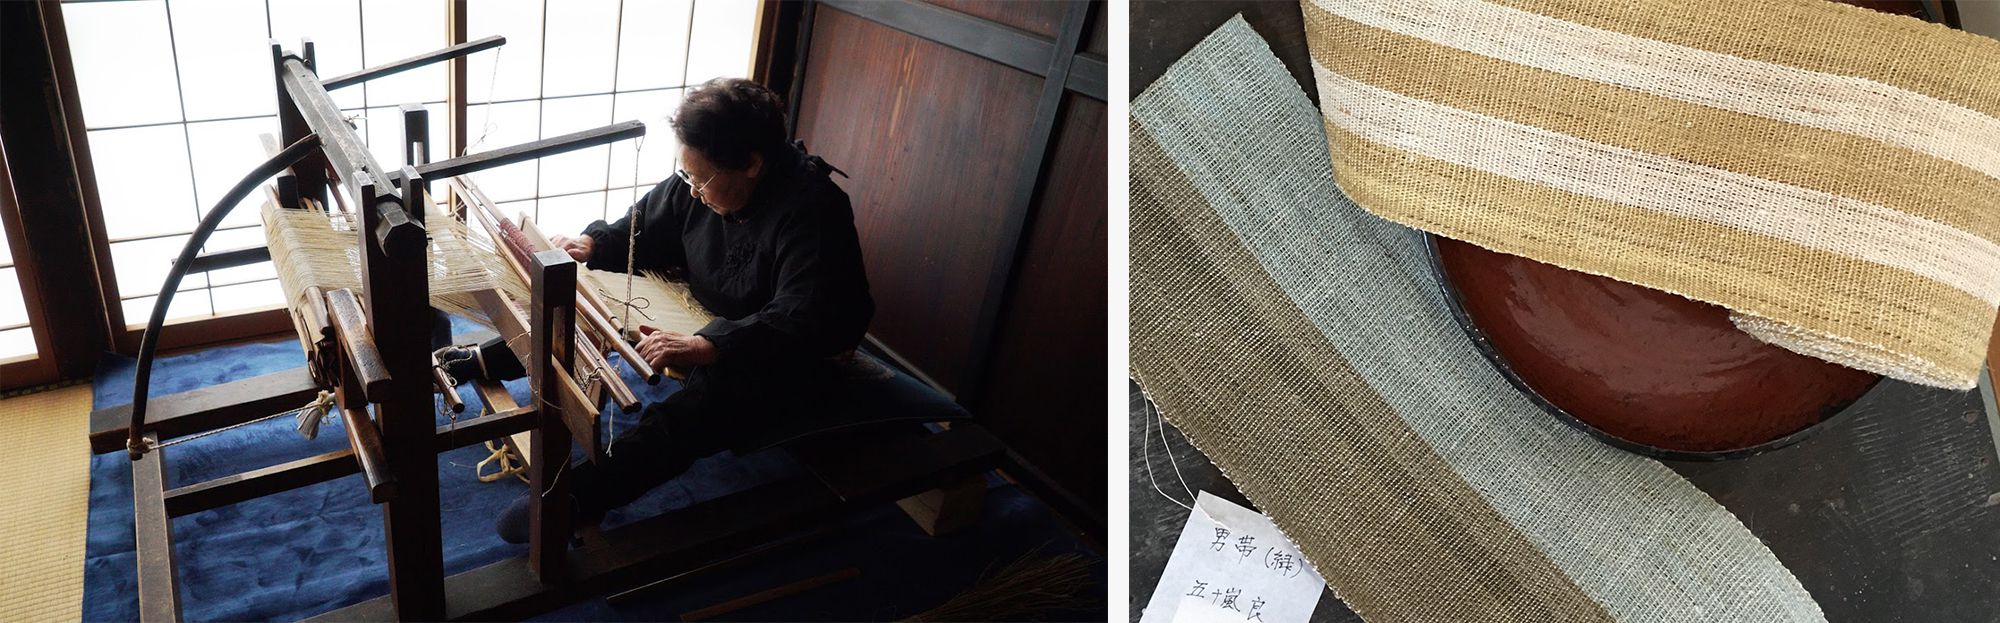 経糸が一定の張り具合で保たれる高機と違い、地機の場合、織る人のからだで経糸の張りが調整されるため、布に自然な風合いが生まれる。 写真提供：昭和村写真右五十嵐良が織った男帯。手仕事のあたたかみが感じられる。Photography by MasakoSuda